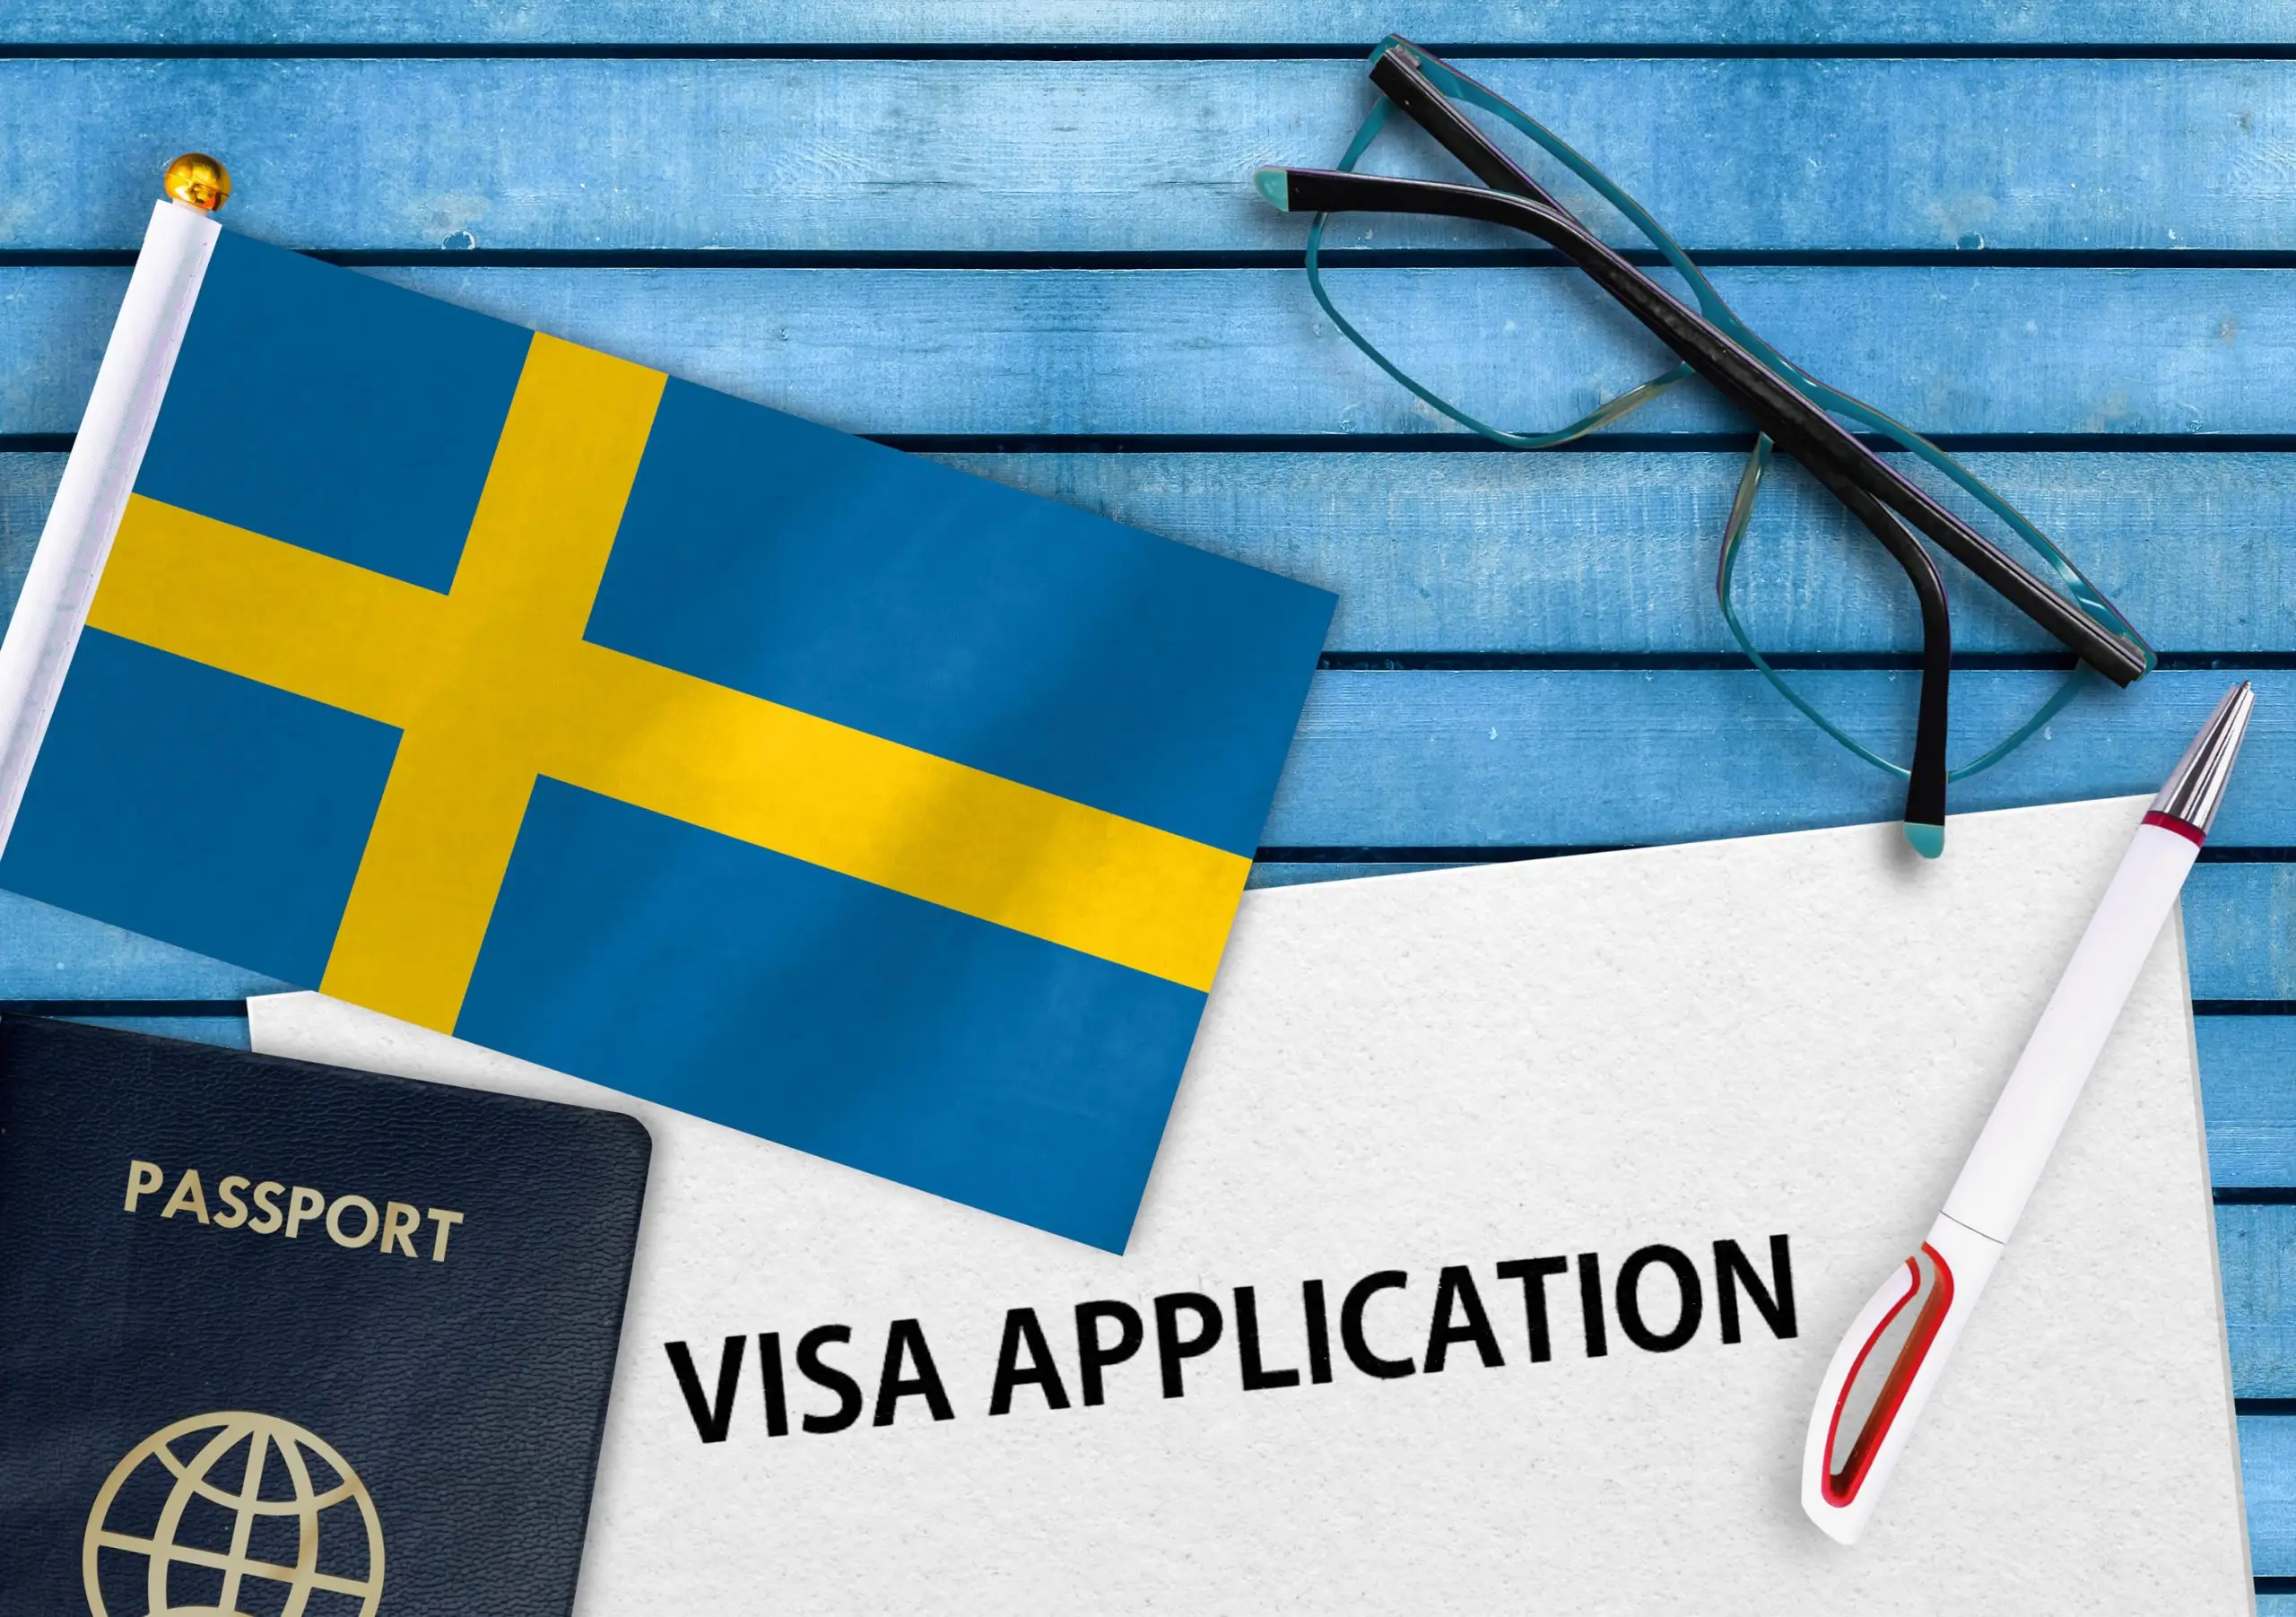 Sweden visa application form and flag